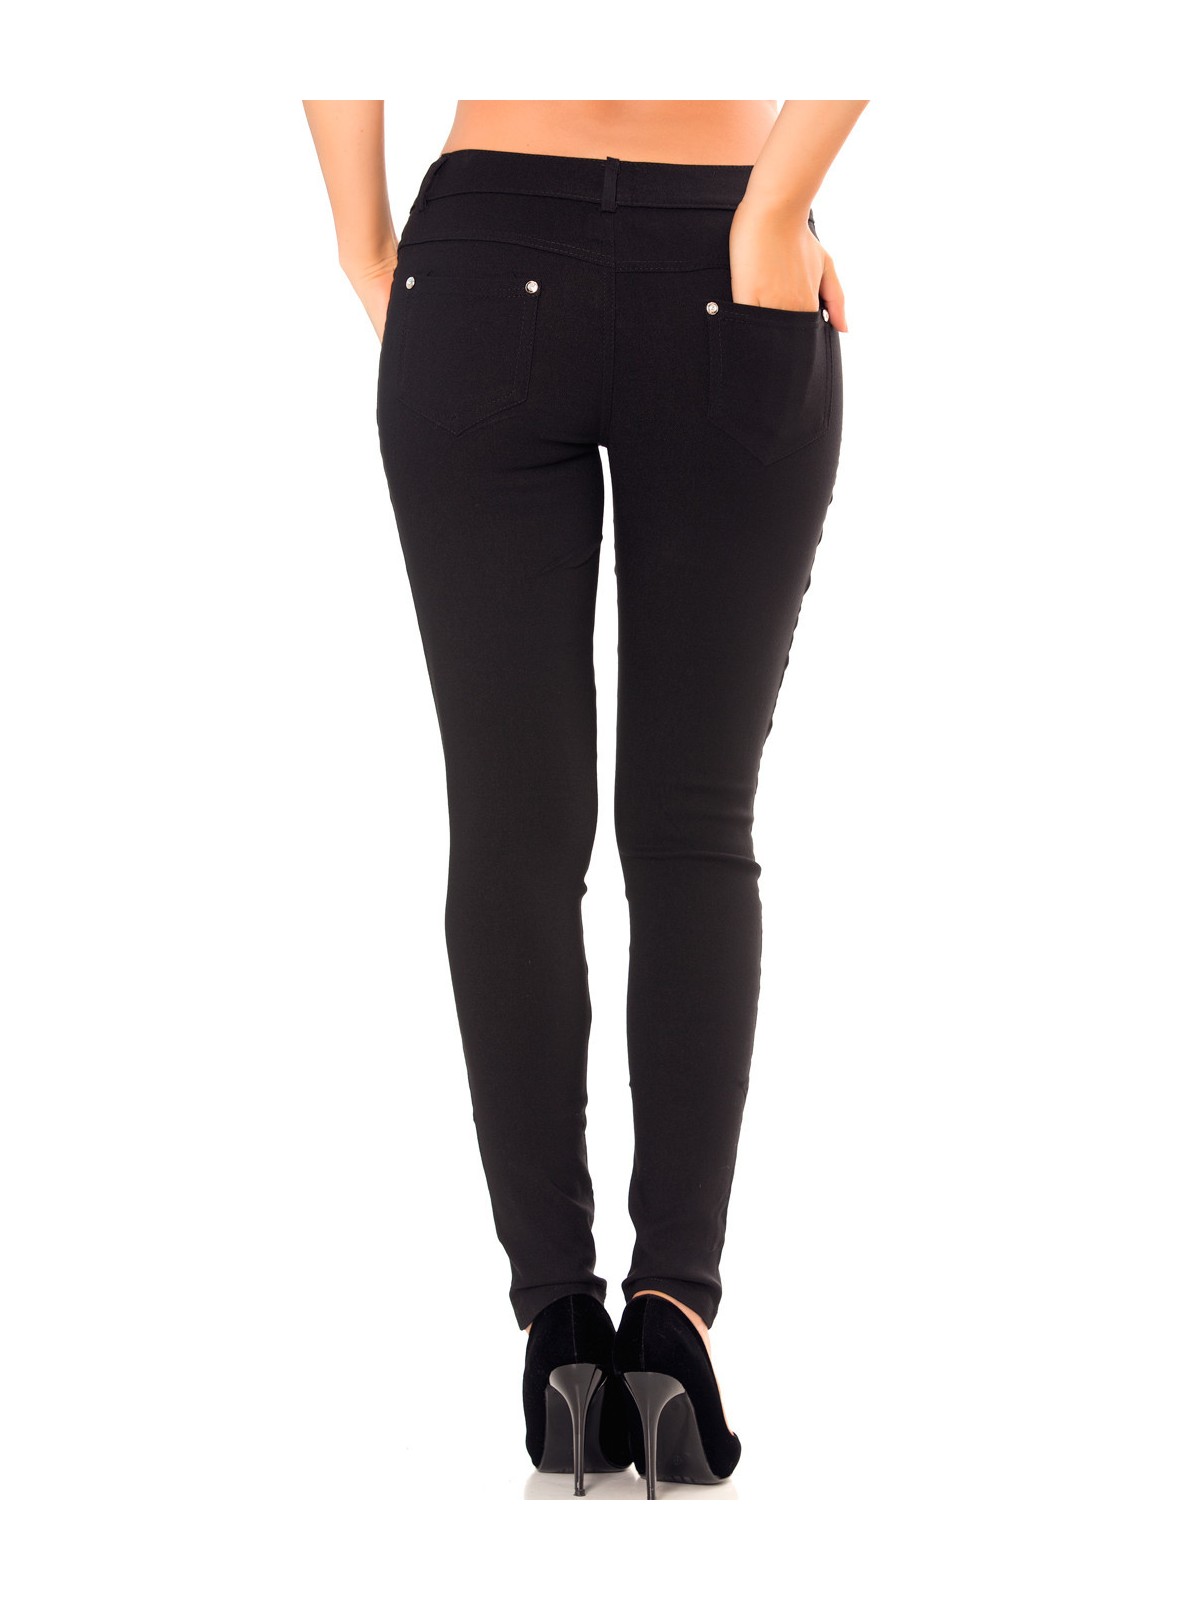 Pantalon slim noir en grande taille , basic avec poches avant et arrière - 5